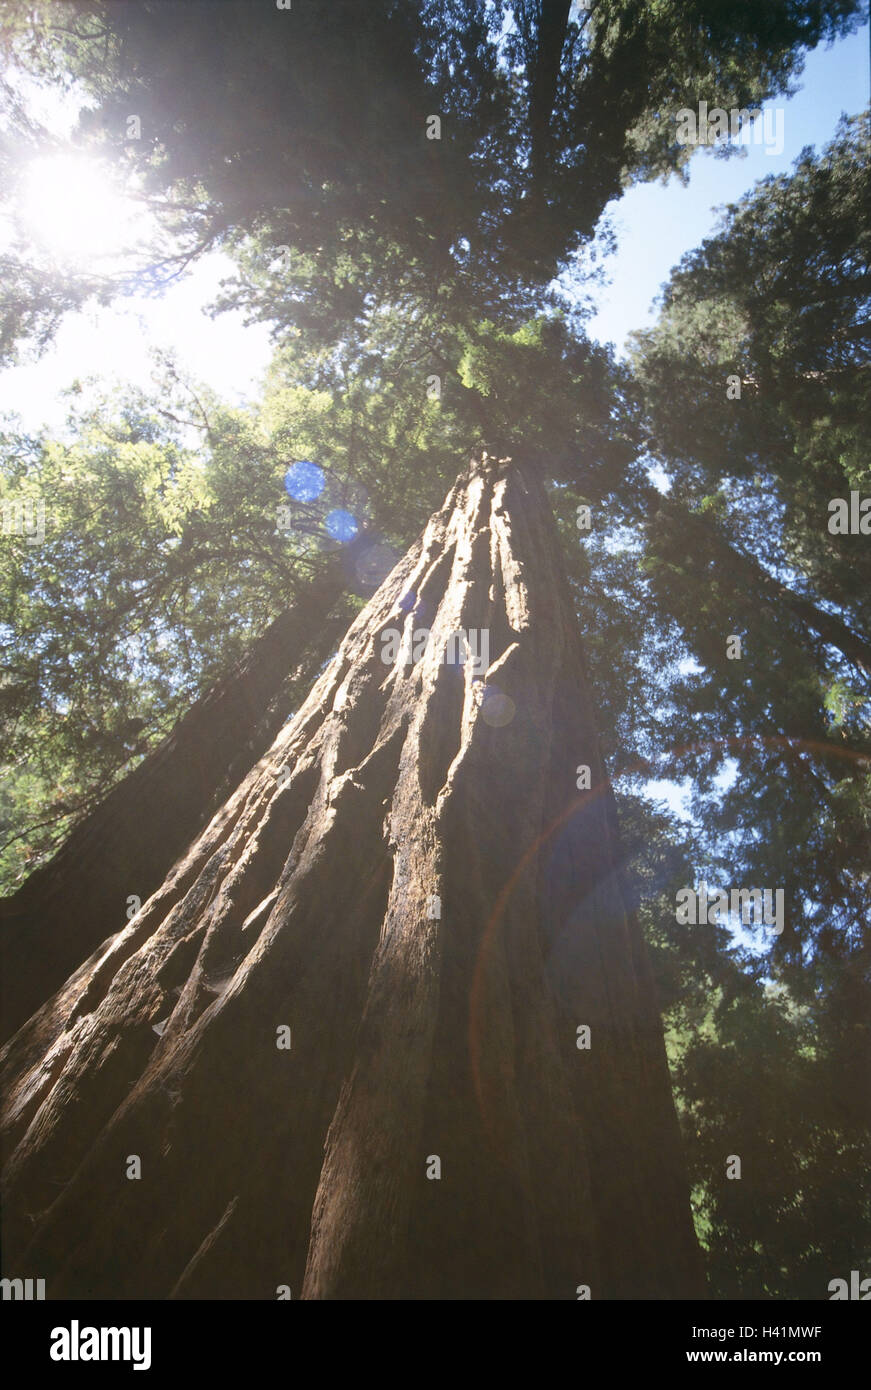 Gli Stati Uniti, California, Muir Woods National Monument, Redwoods, dal di sotto, America, Nord America west coast, parco nazionale, Küstensequoias silvestre, Sequoia sempervirens, alberi, Sequoiadendron, palude piante di cipressi, sequoie, tronchi, monumento naturale, UNE Foto Stock